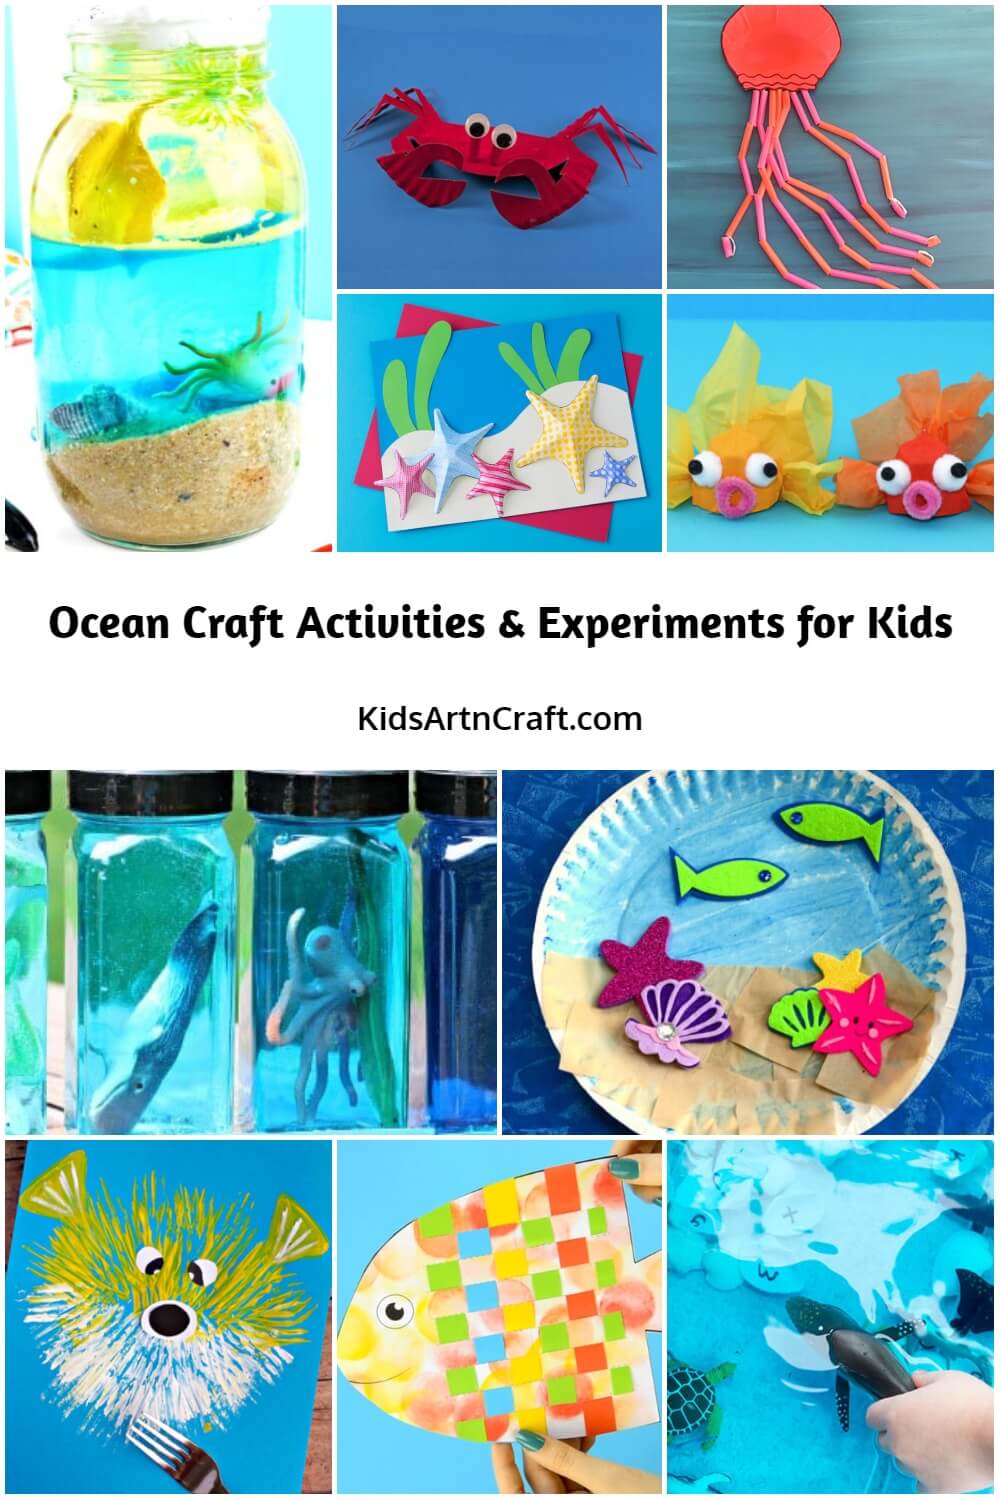 Ocean Craft Activities & Experiments for Kids